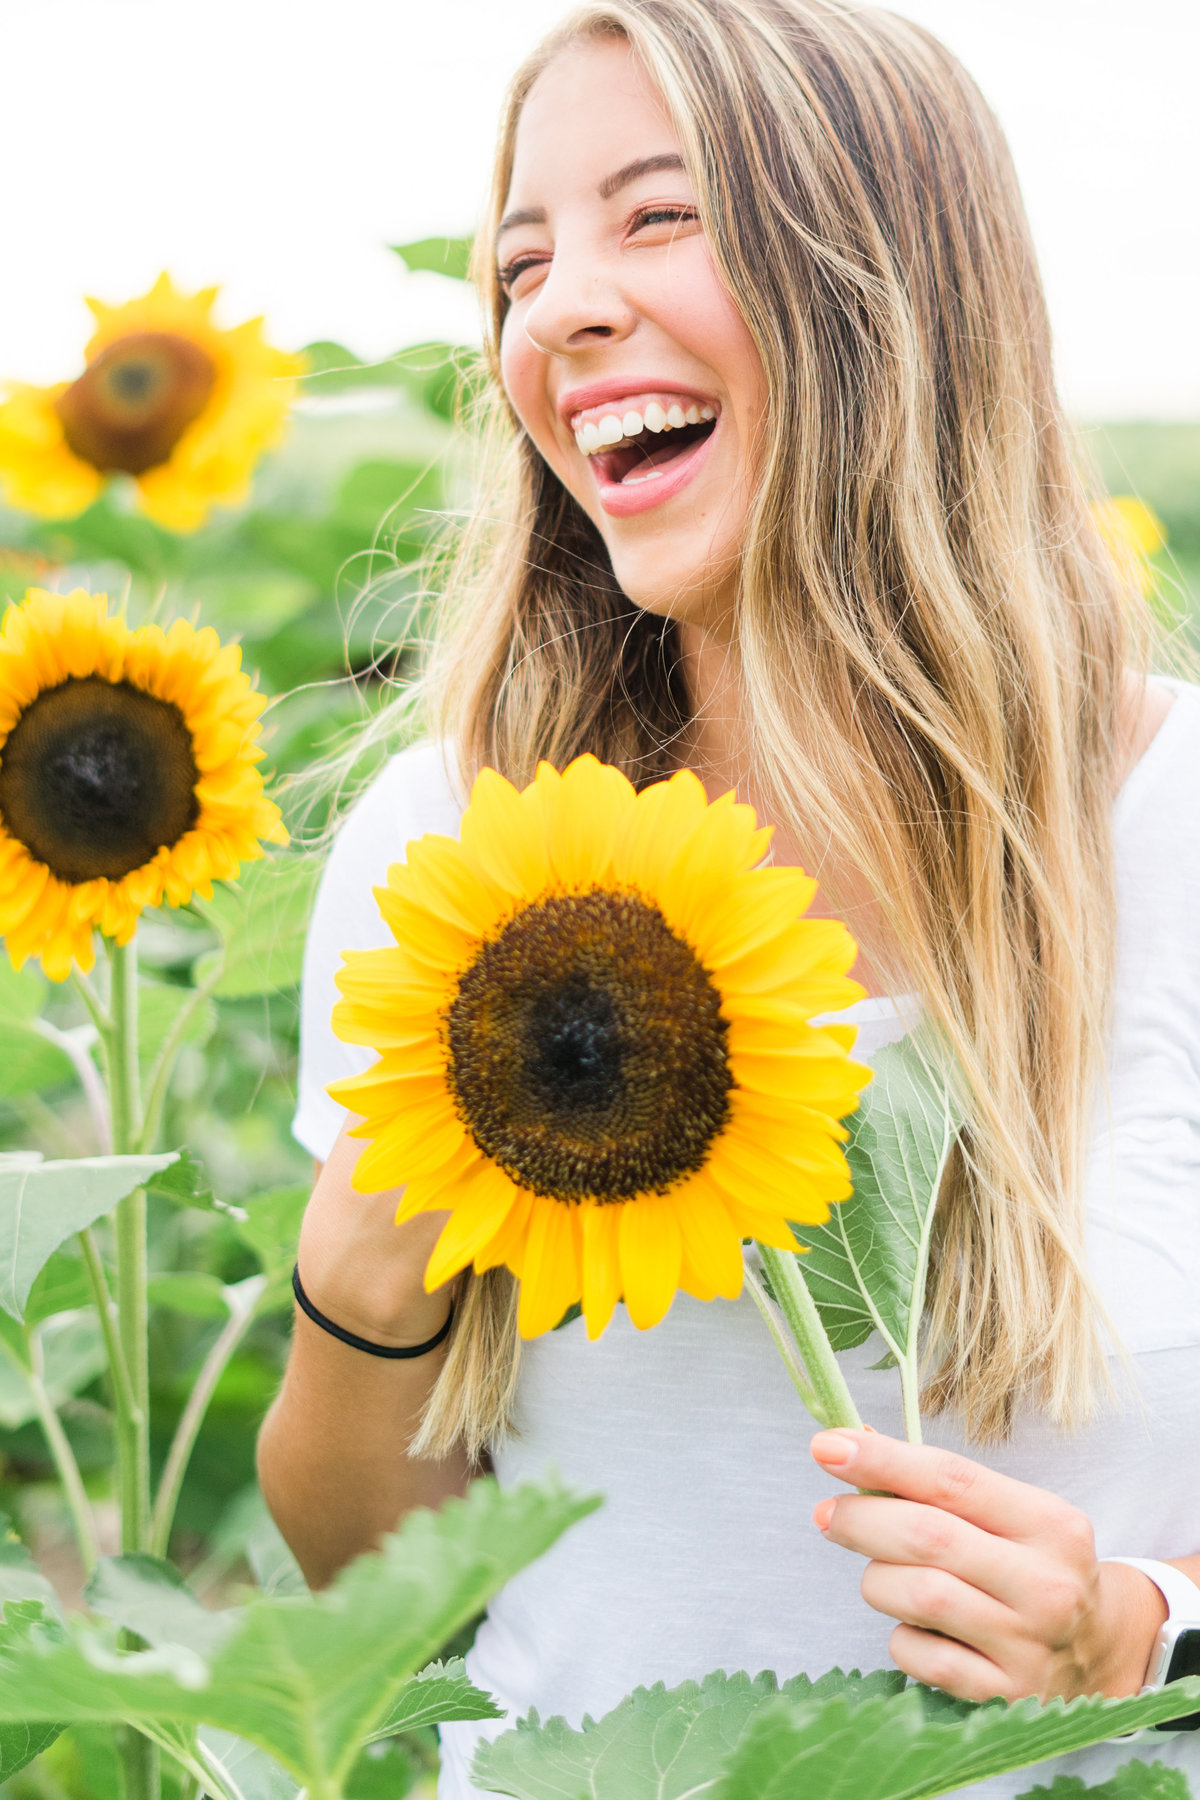 Senior girl holding sunflower laughing